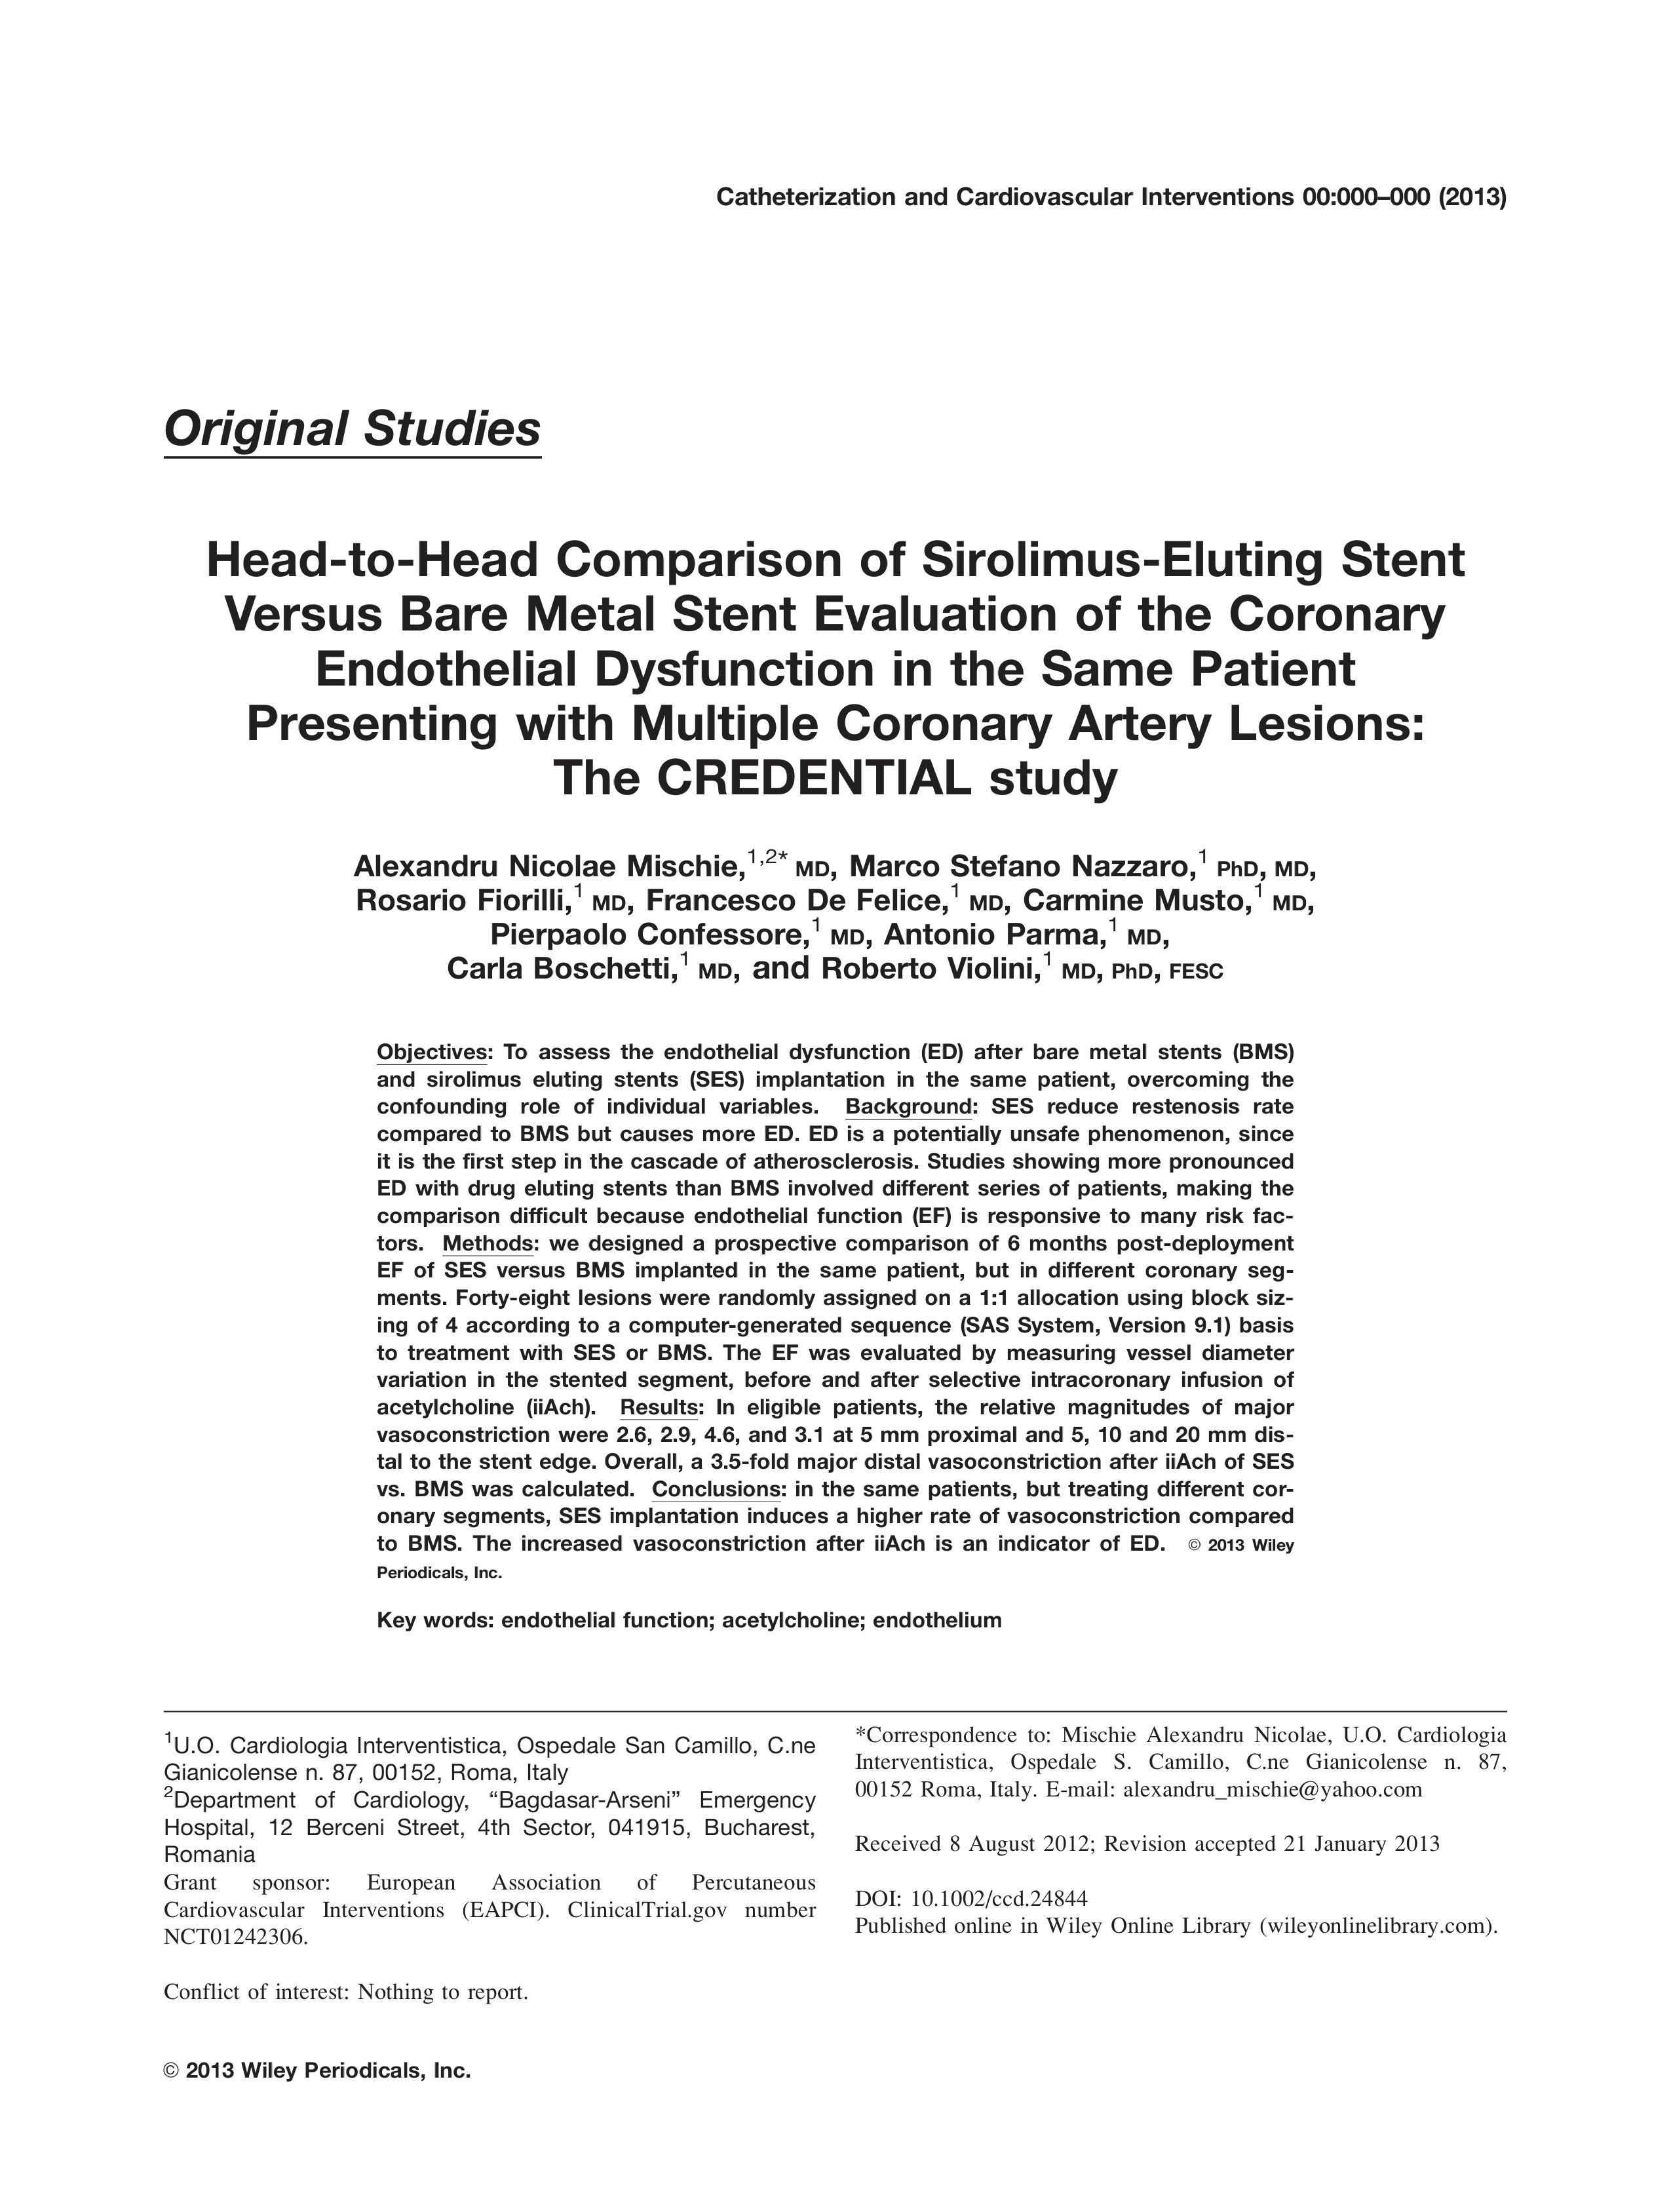 Comparație între stenturile medicate și stenturile nemedicate în evaluarea funcției endoteliale în același pacient cu multiple stenoze coronare: studiul credențial